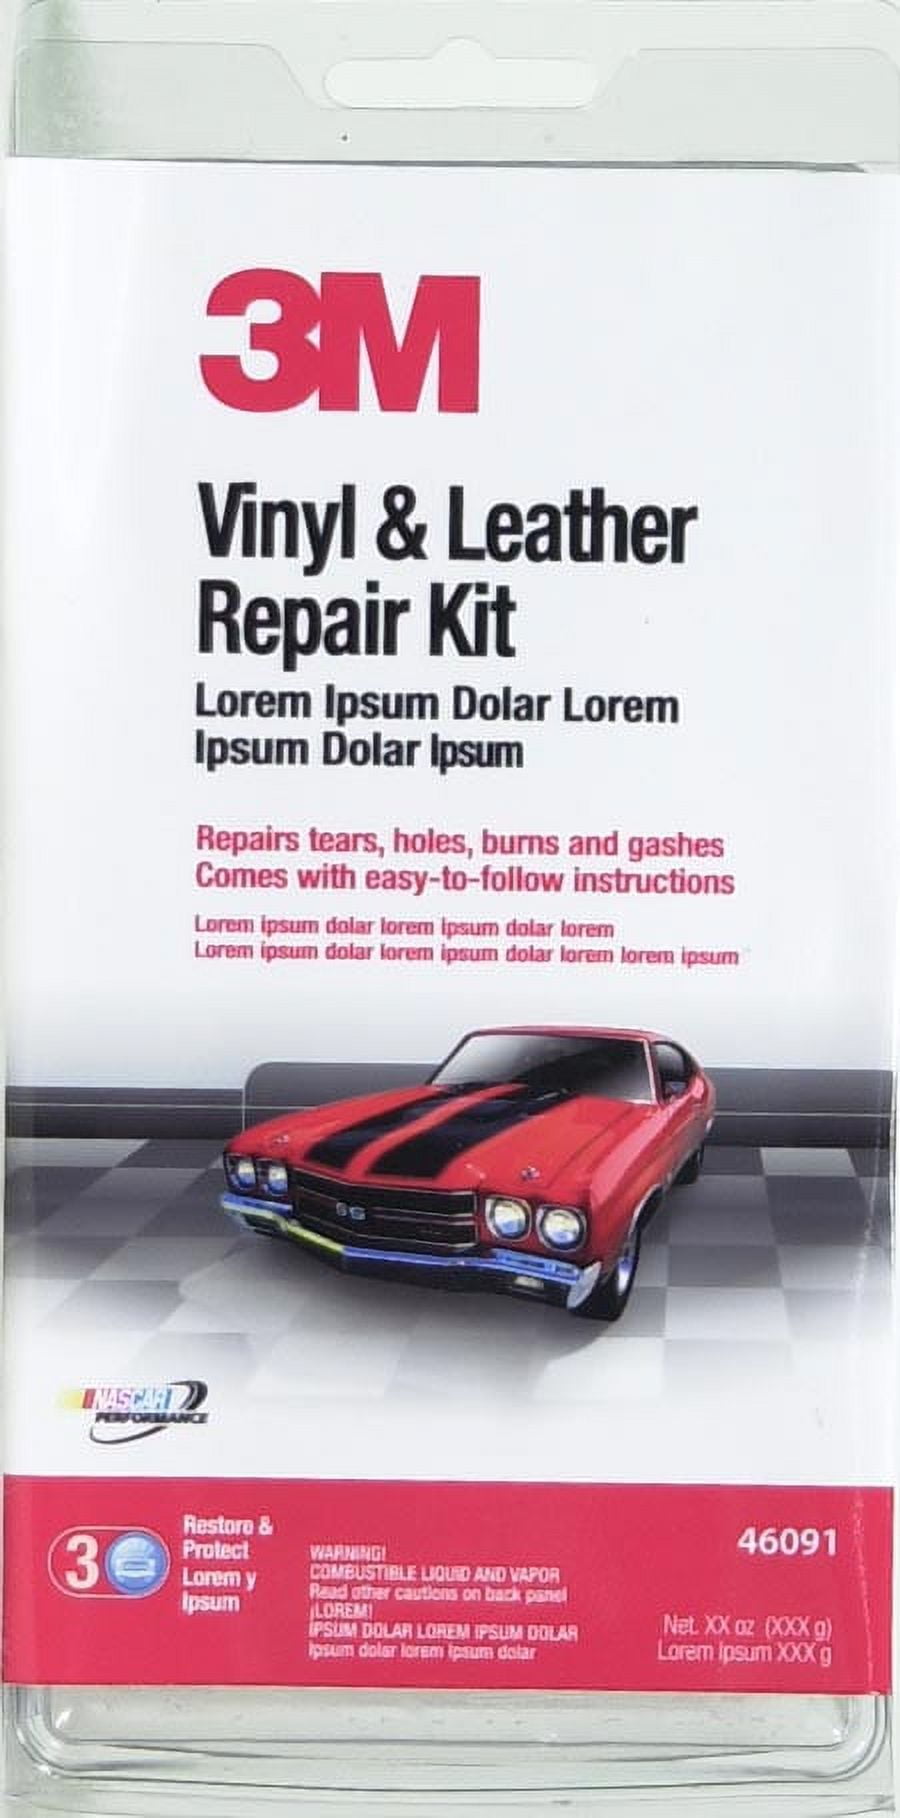 3M Vinyl & Leather Repair Kit 